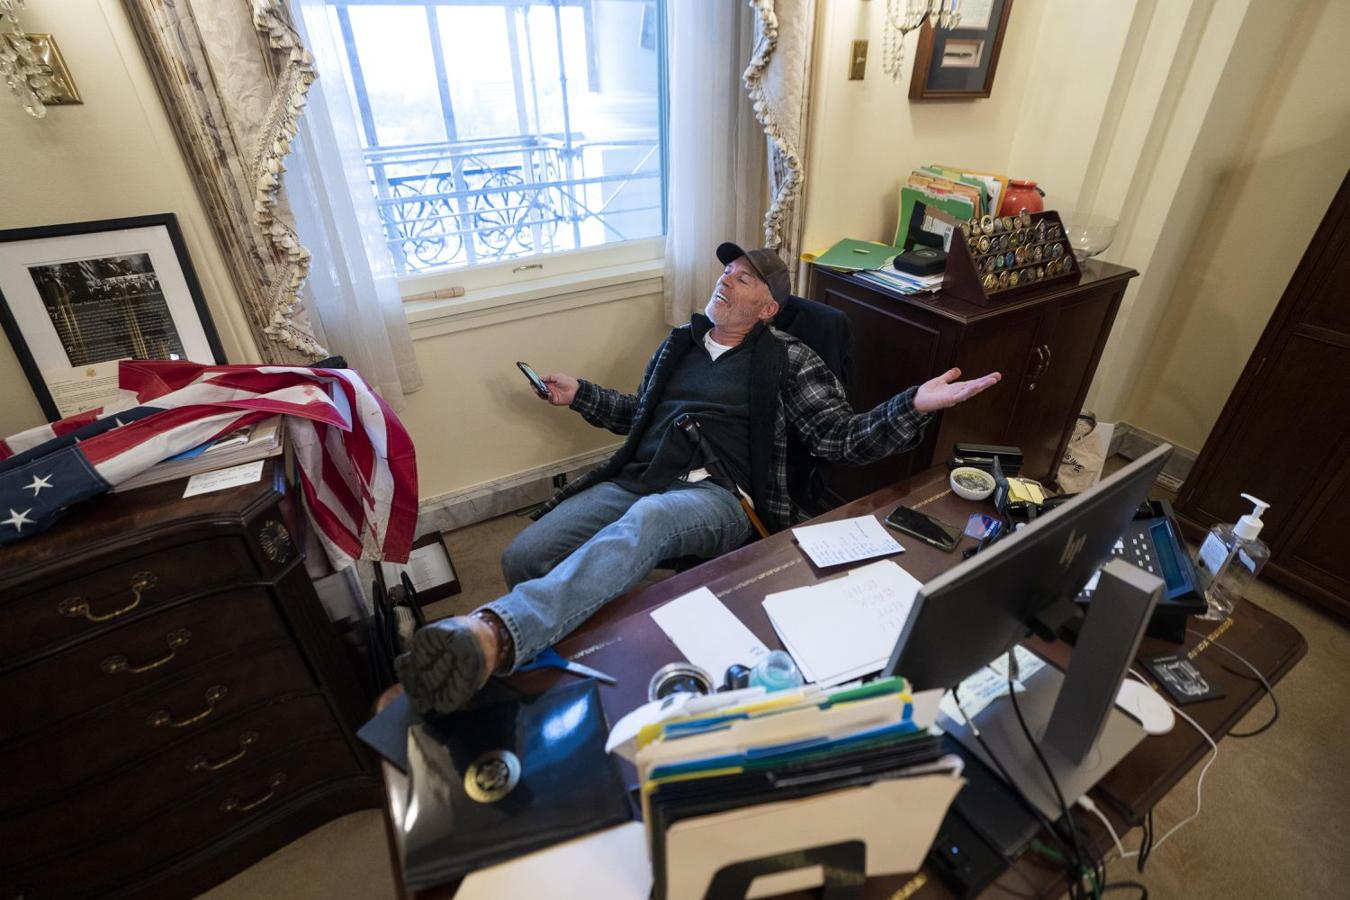 Un seguidor de Trump sentado en la oficina de Nancy Pelosi, tras el asalto al Capitolio